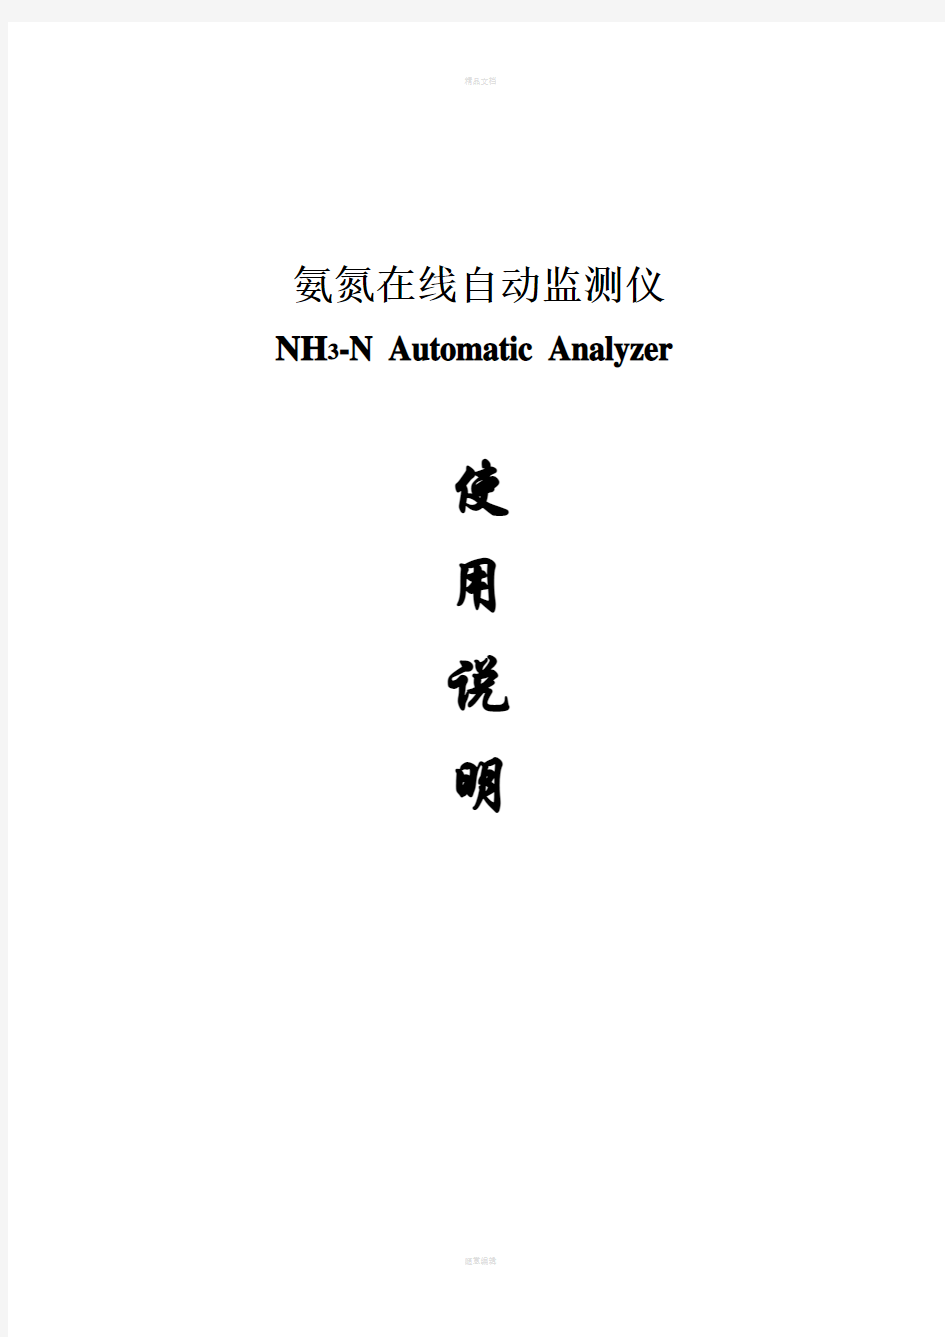 宇星NH3-N-II氨氮自动分析仪说明书